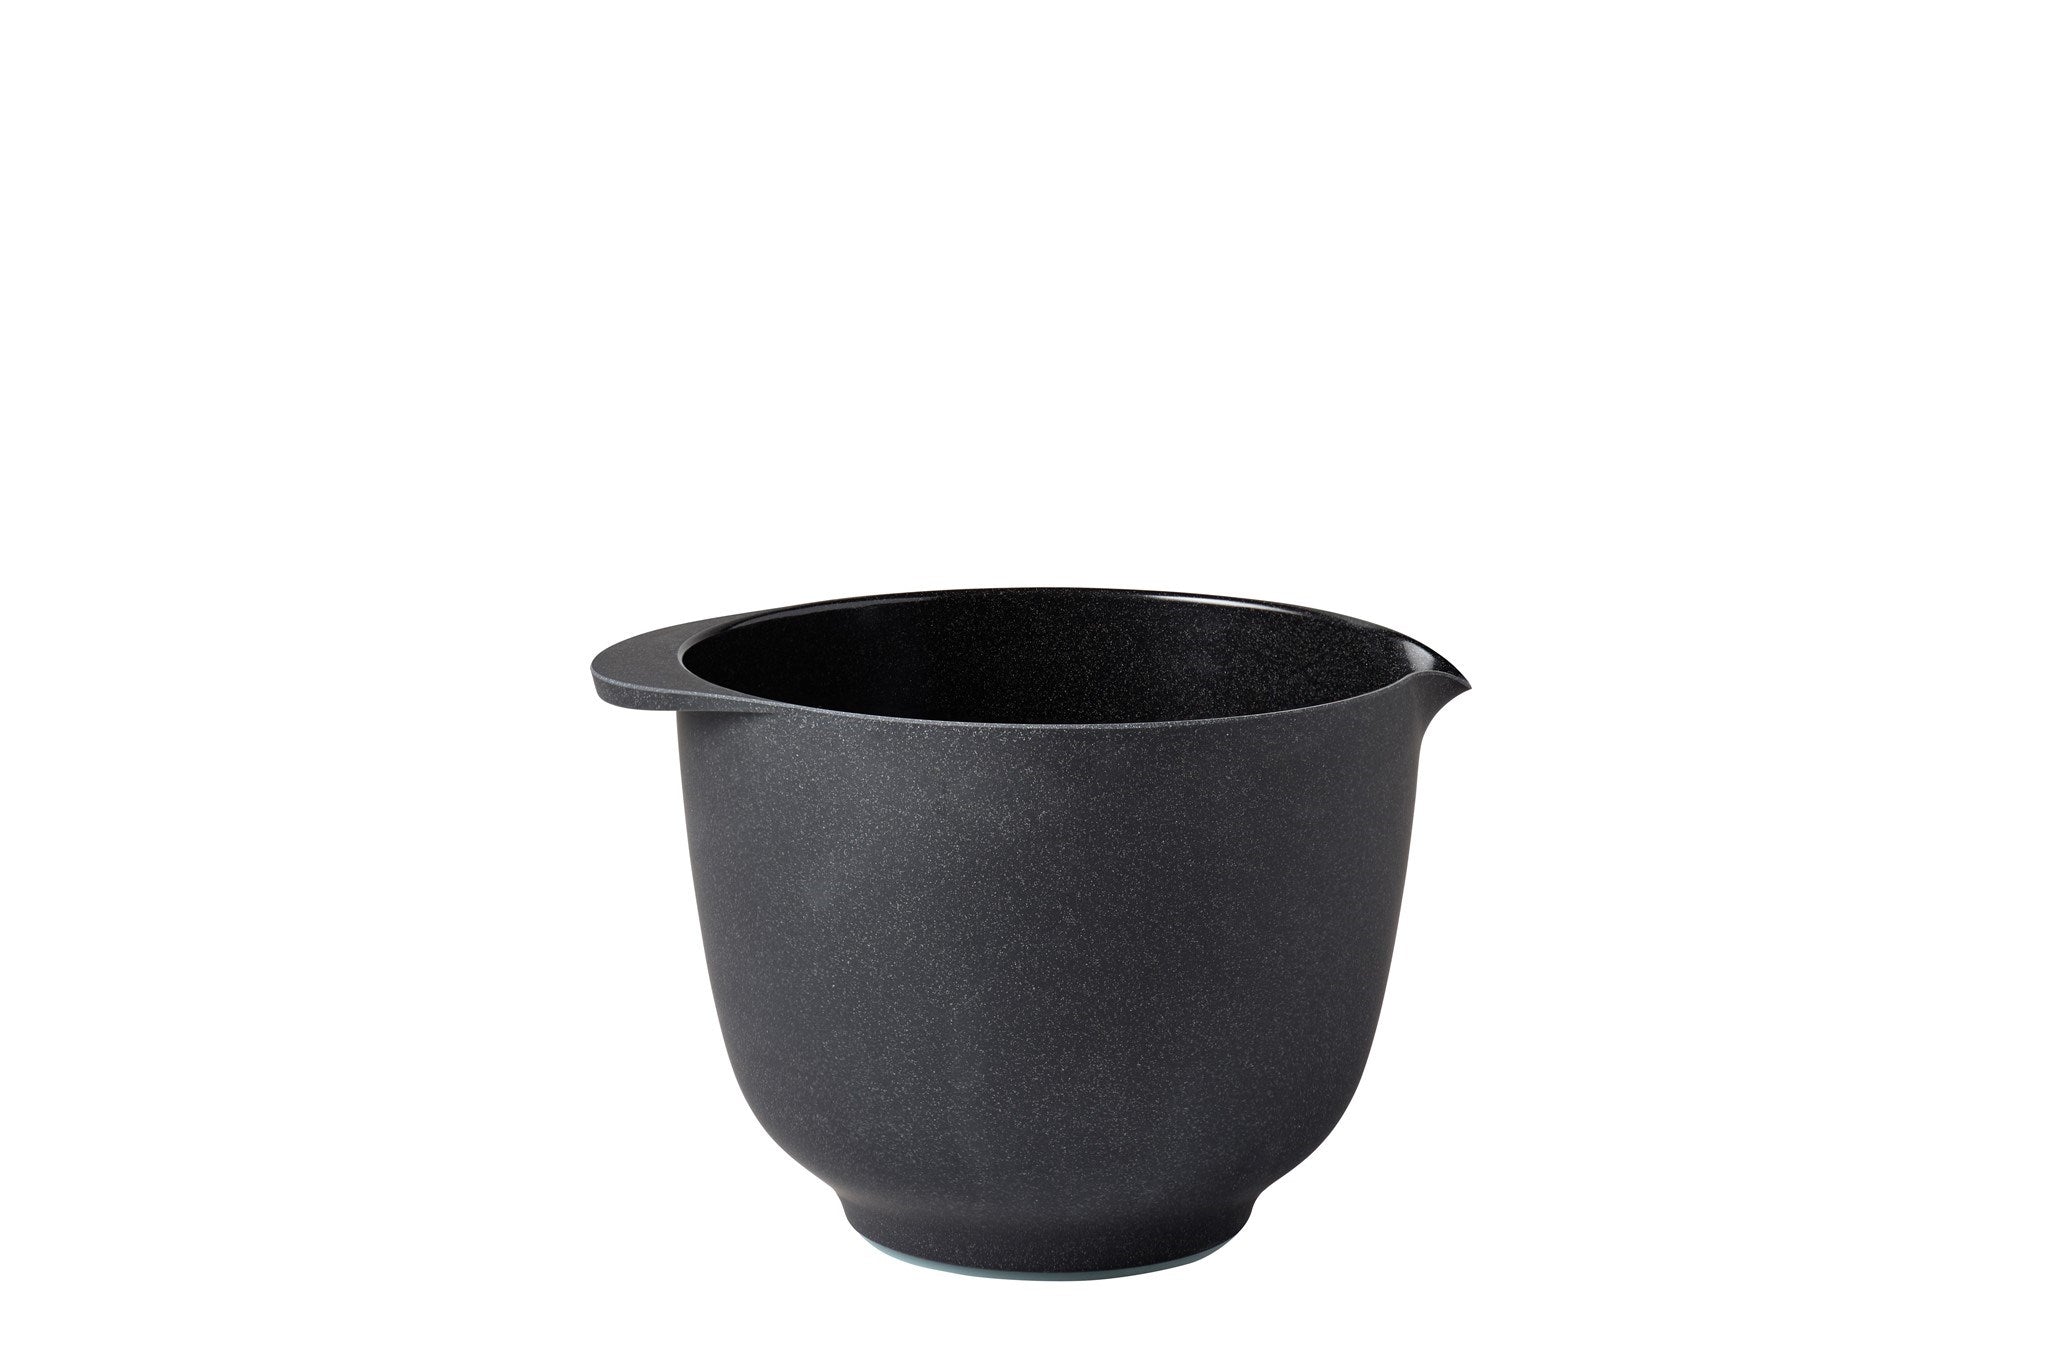 Mixing Bowl - Margrethe - Pebble Black - 1.5L 51oz